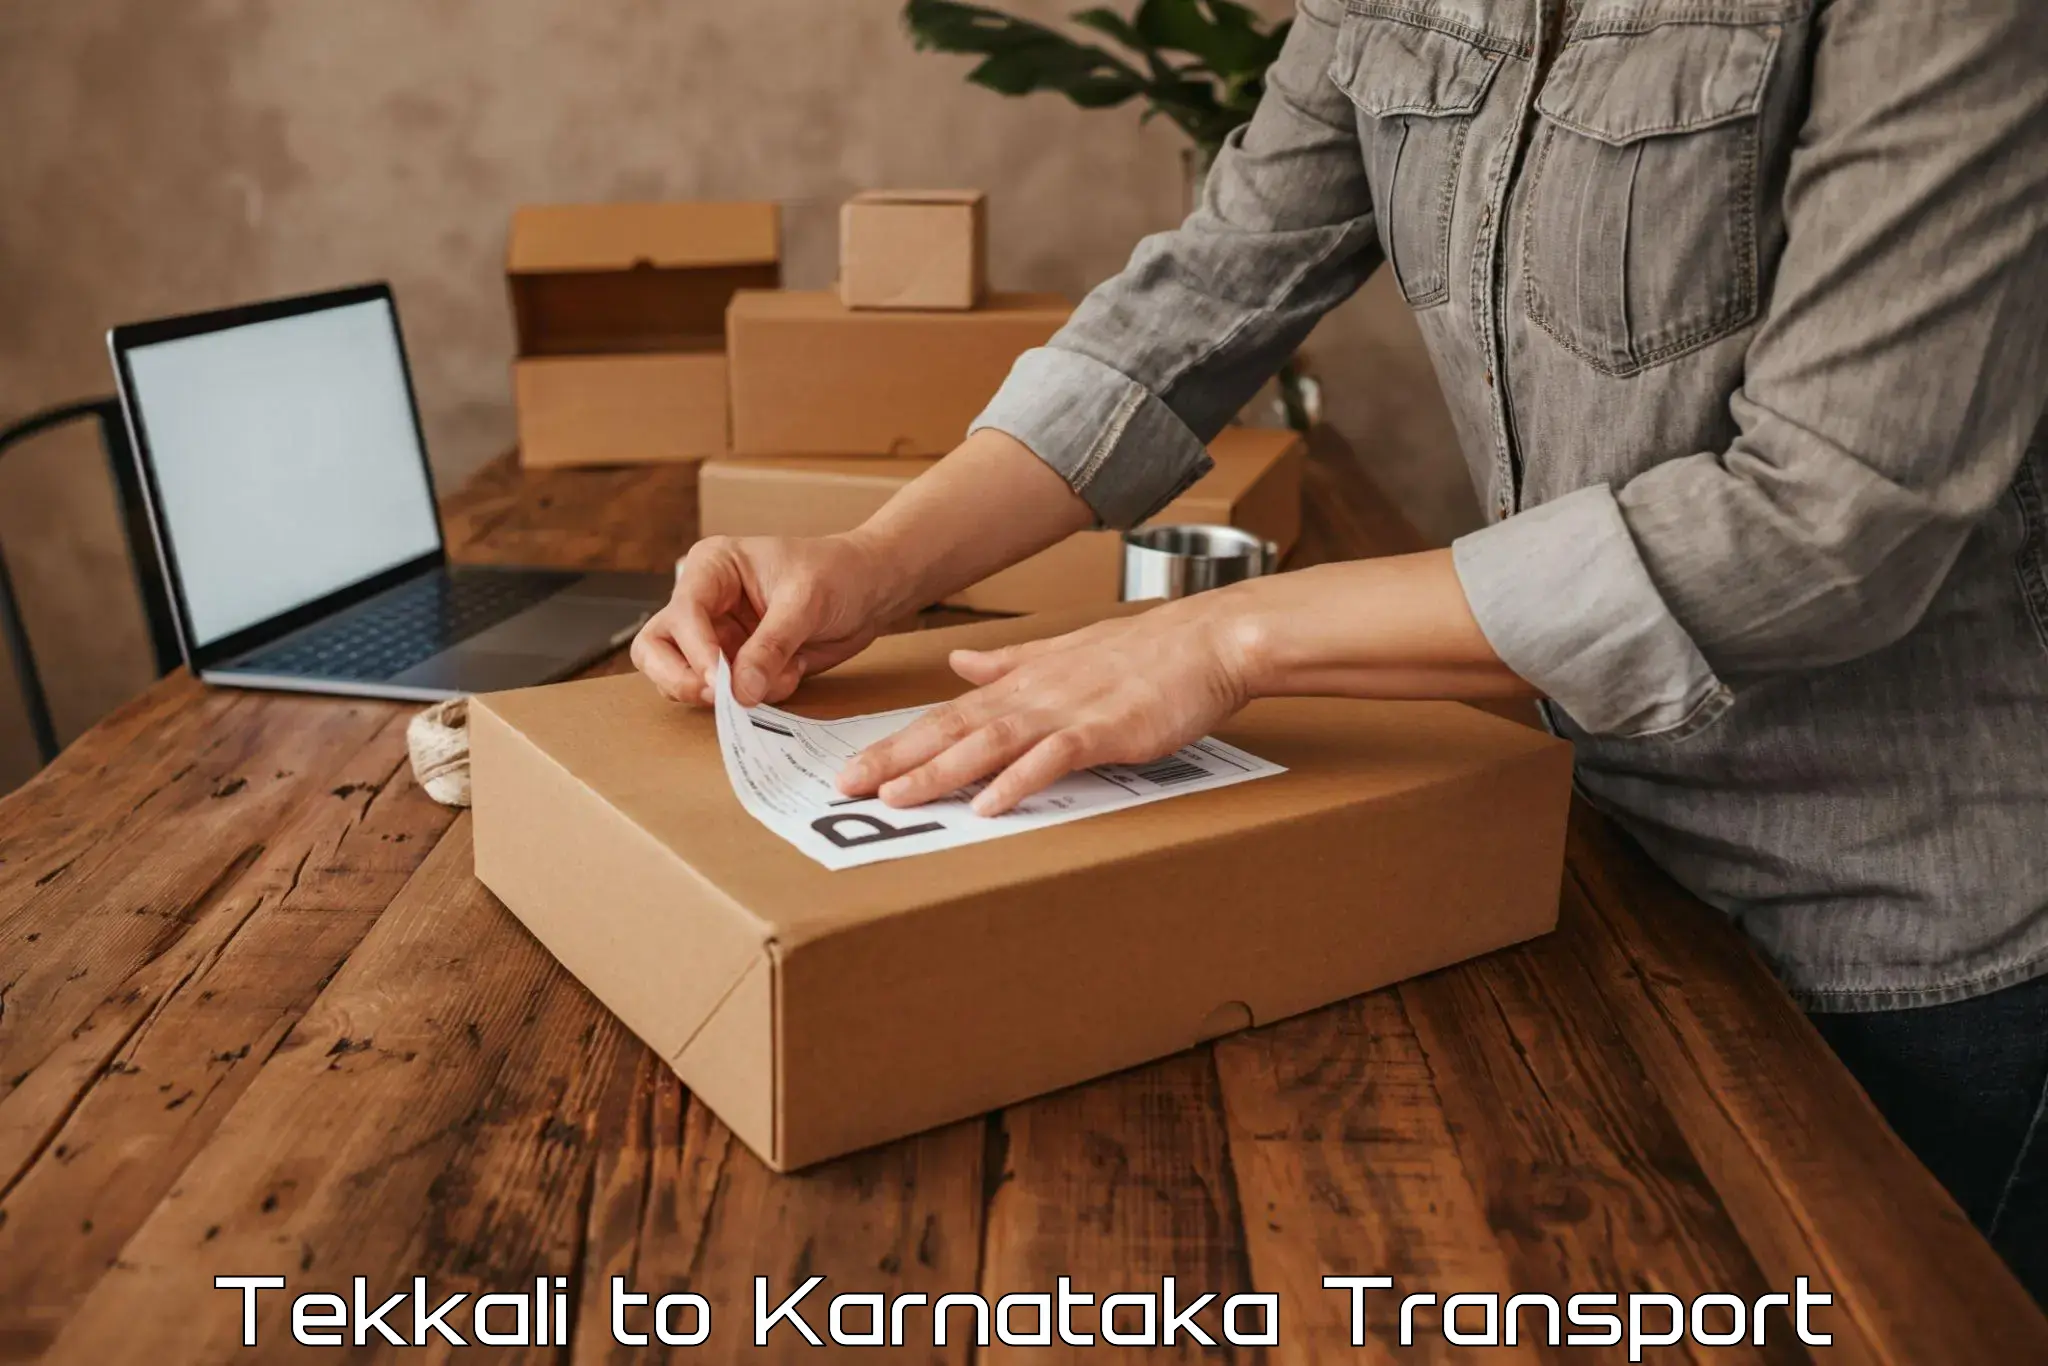 Online transport booking Tekkali to Chikkamagalur